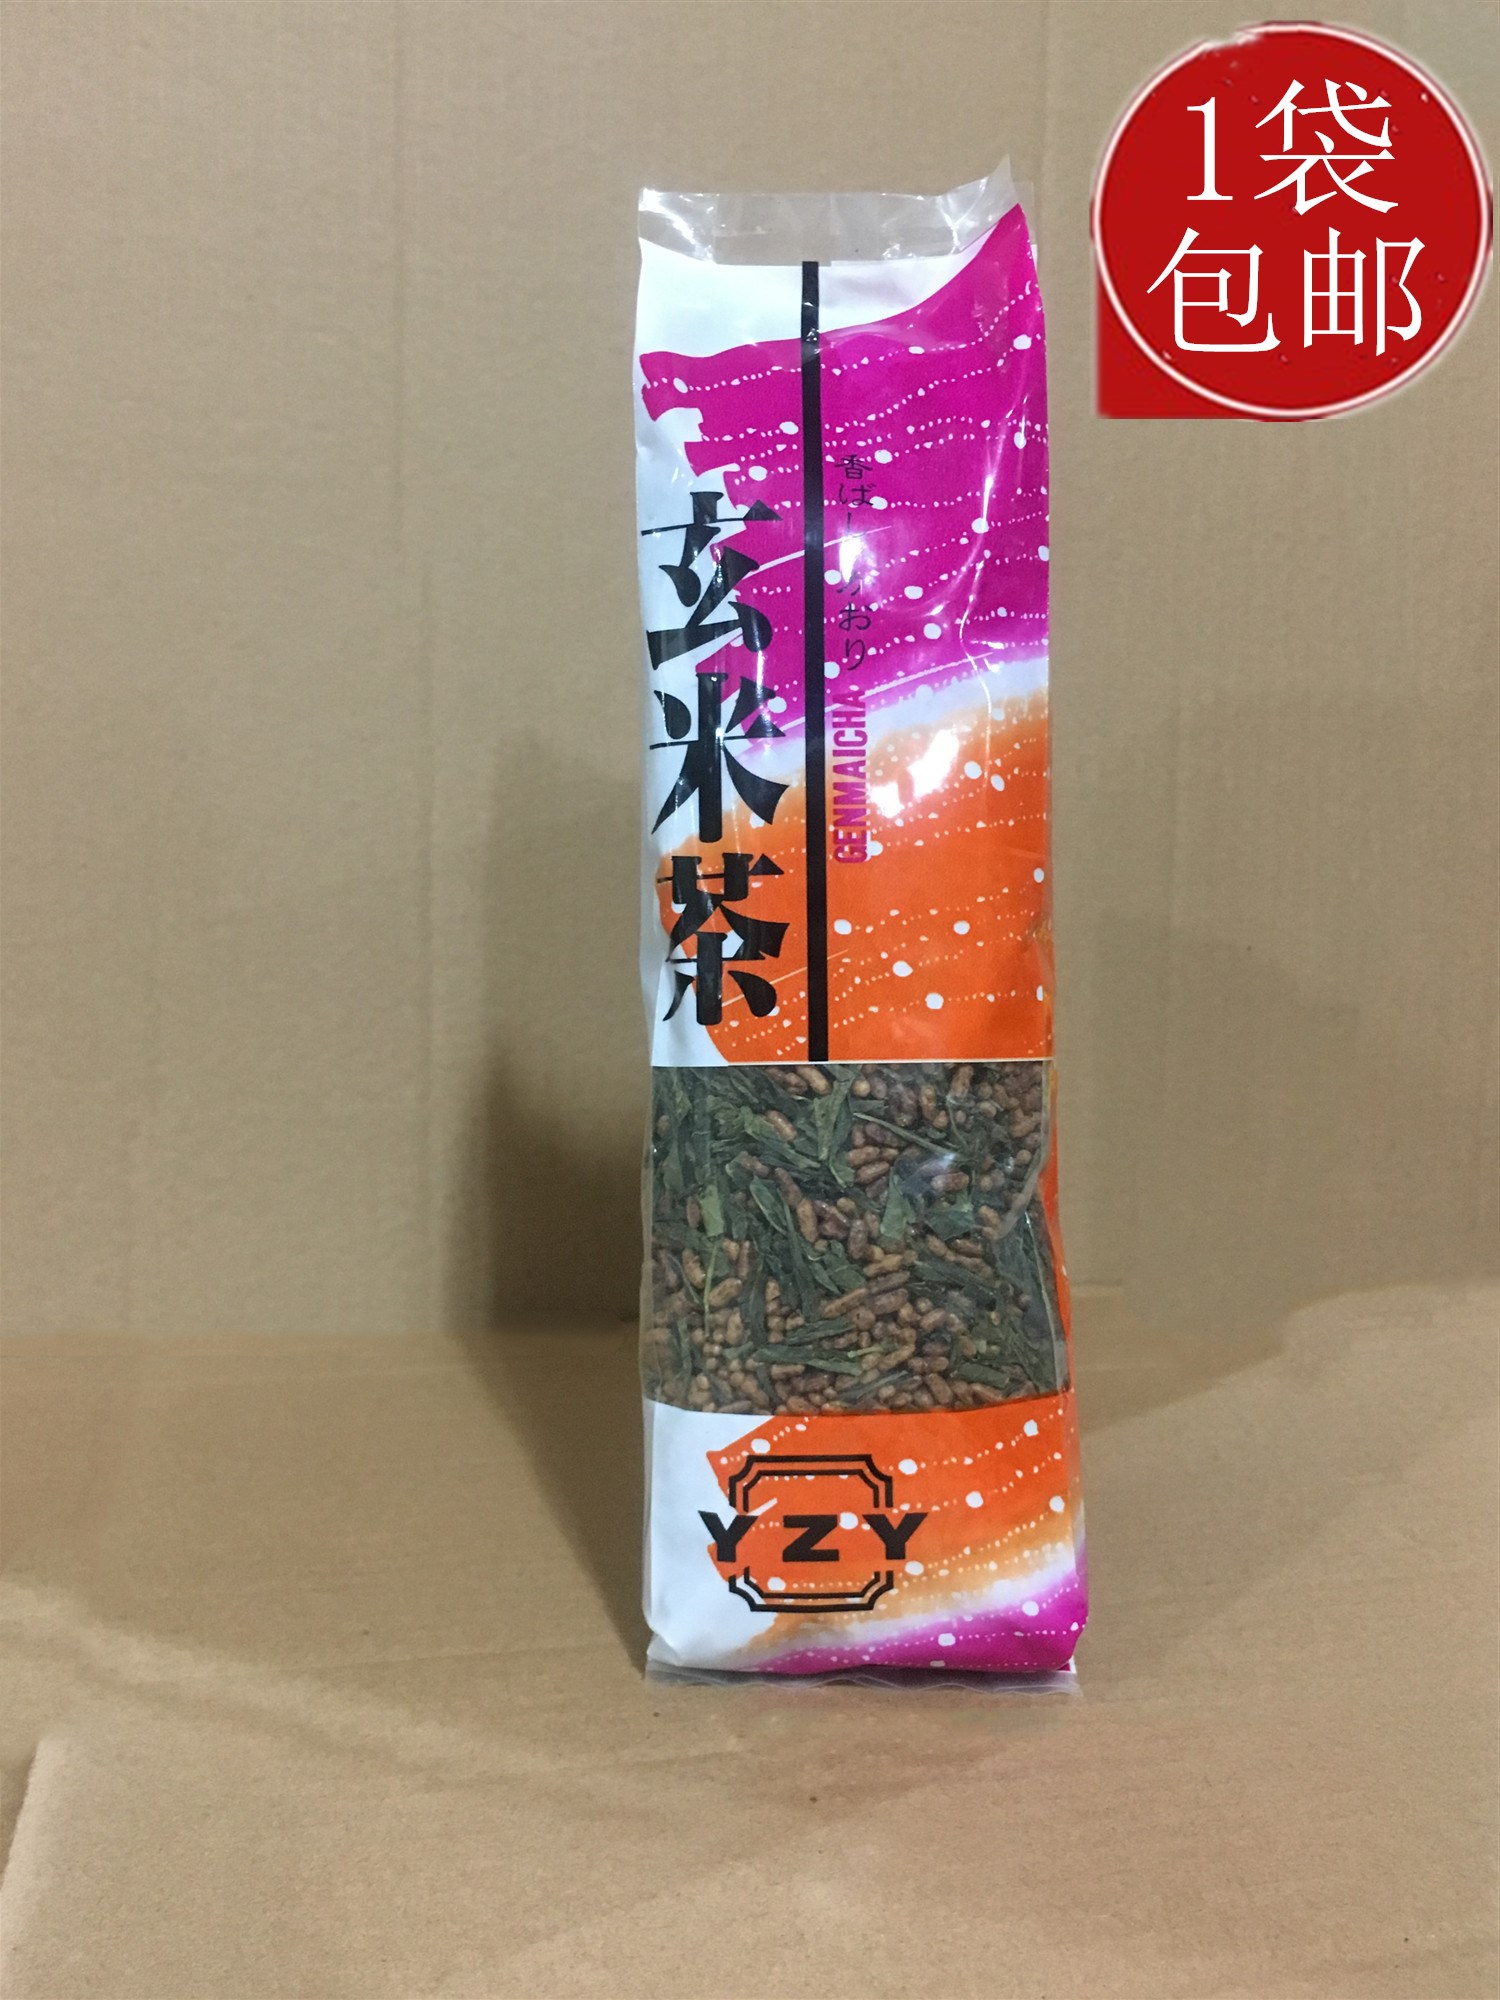 包邮  日式玄米茶200g日本料理店糙米茶绿茶叶烘焙拉面店用寿司煎